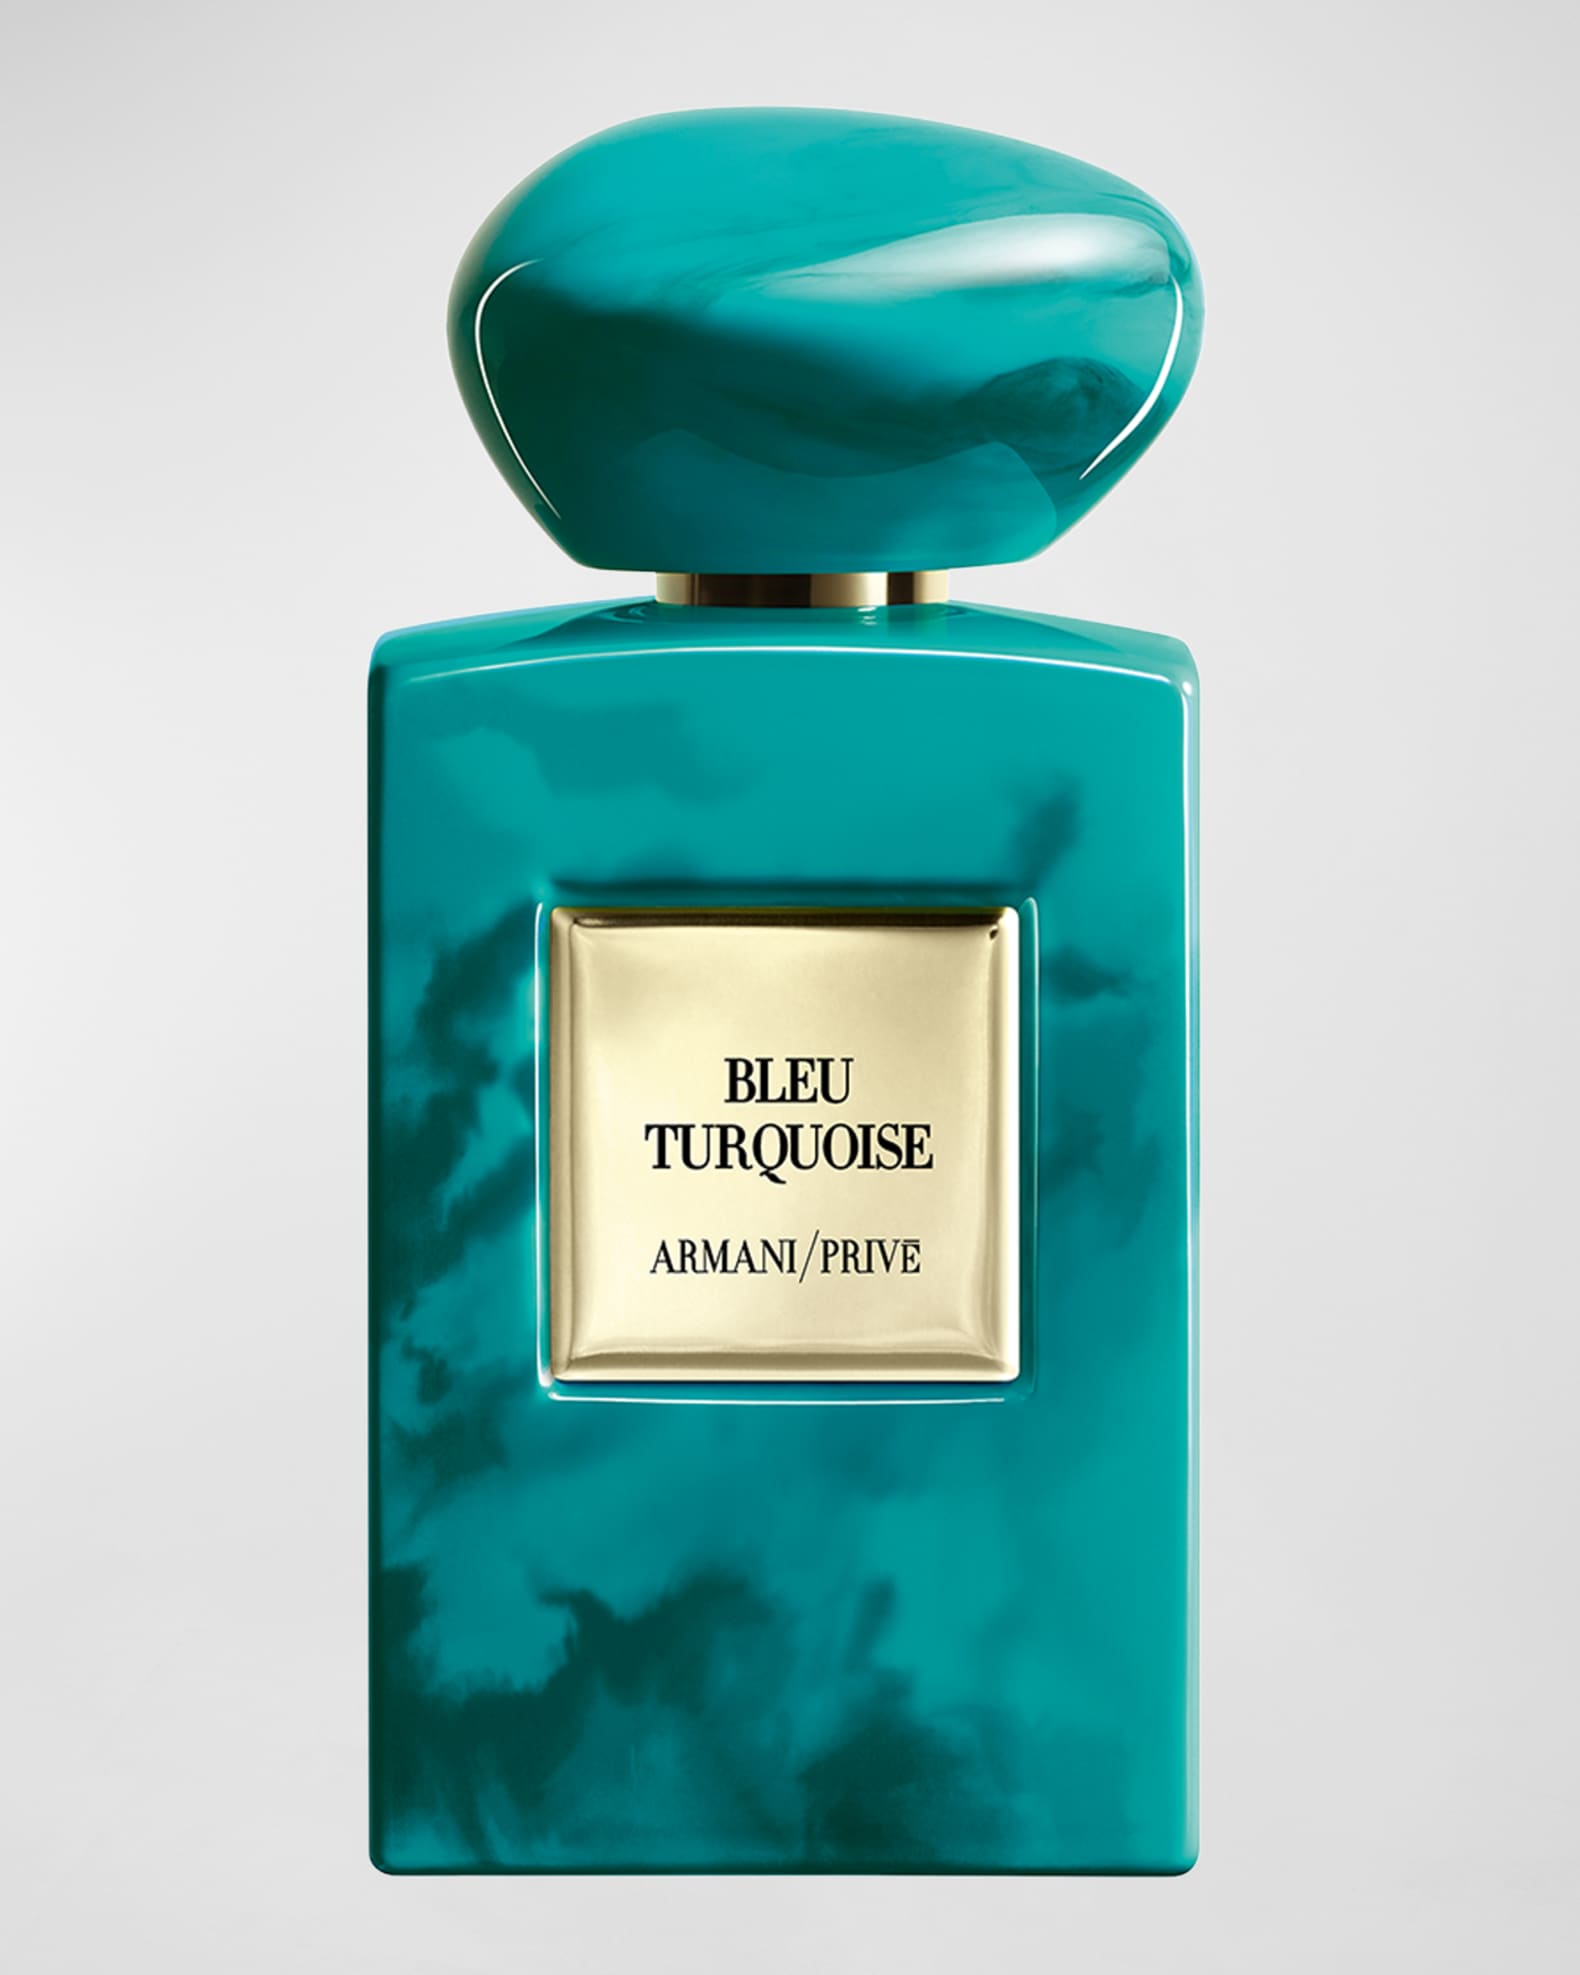 ARMANI beauty Armani Prive Bleu Turquoise Eau de Parfum,  oz./ 100 mL |  Neiman Marcus